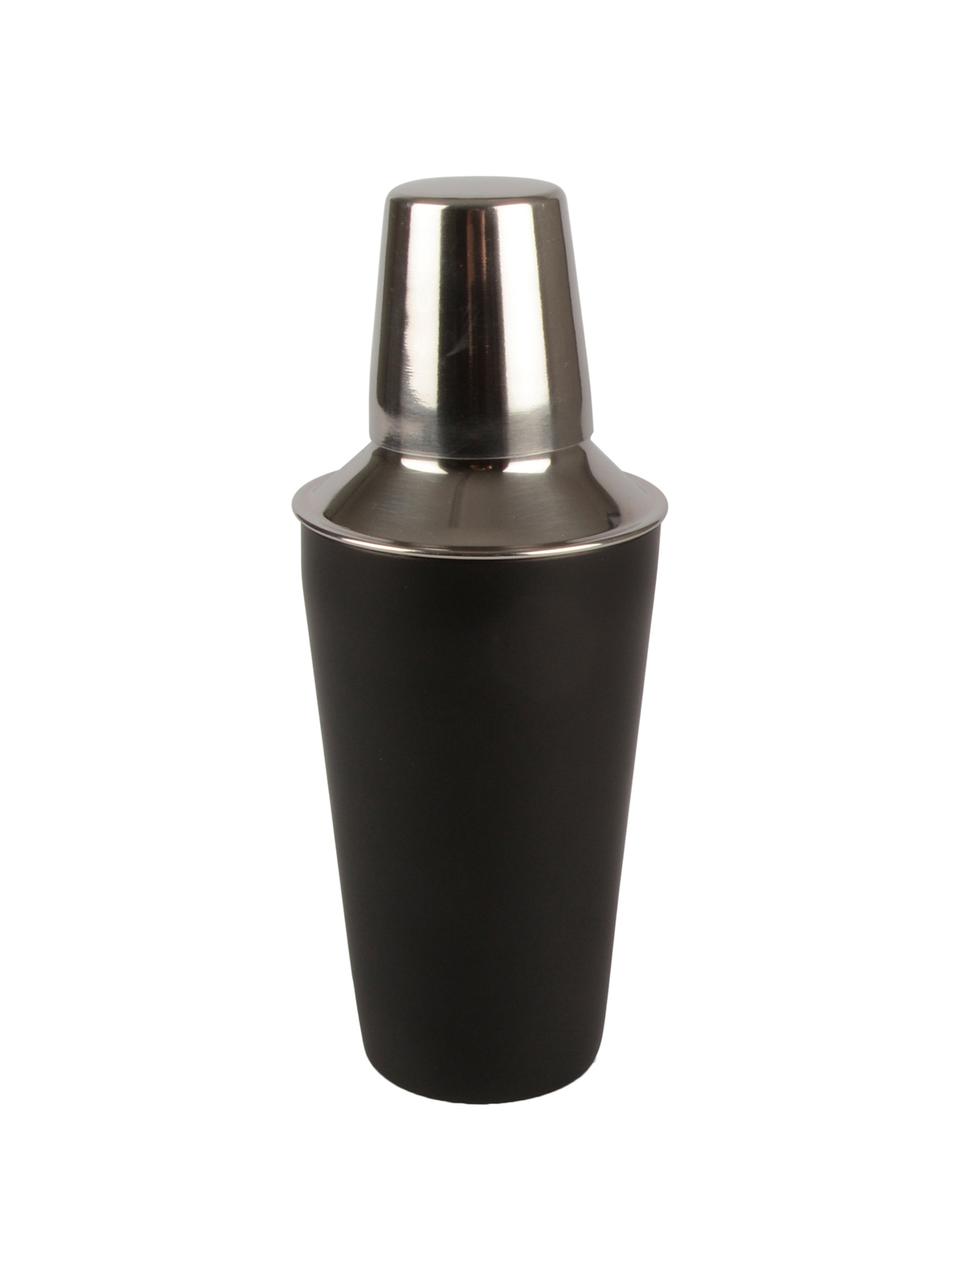 Cocktailshaker Stambi in zwart/zilverkleurig, Gecoat edelstaal, Zwart, staalkleurig, Ø 8 x H 22 cm